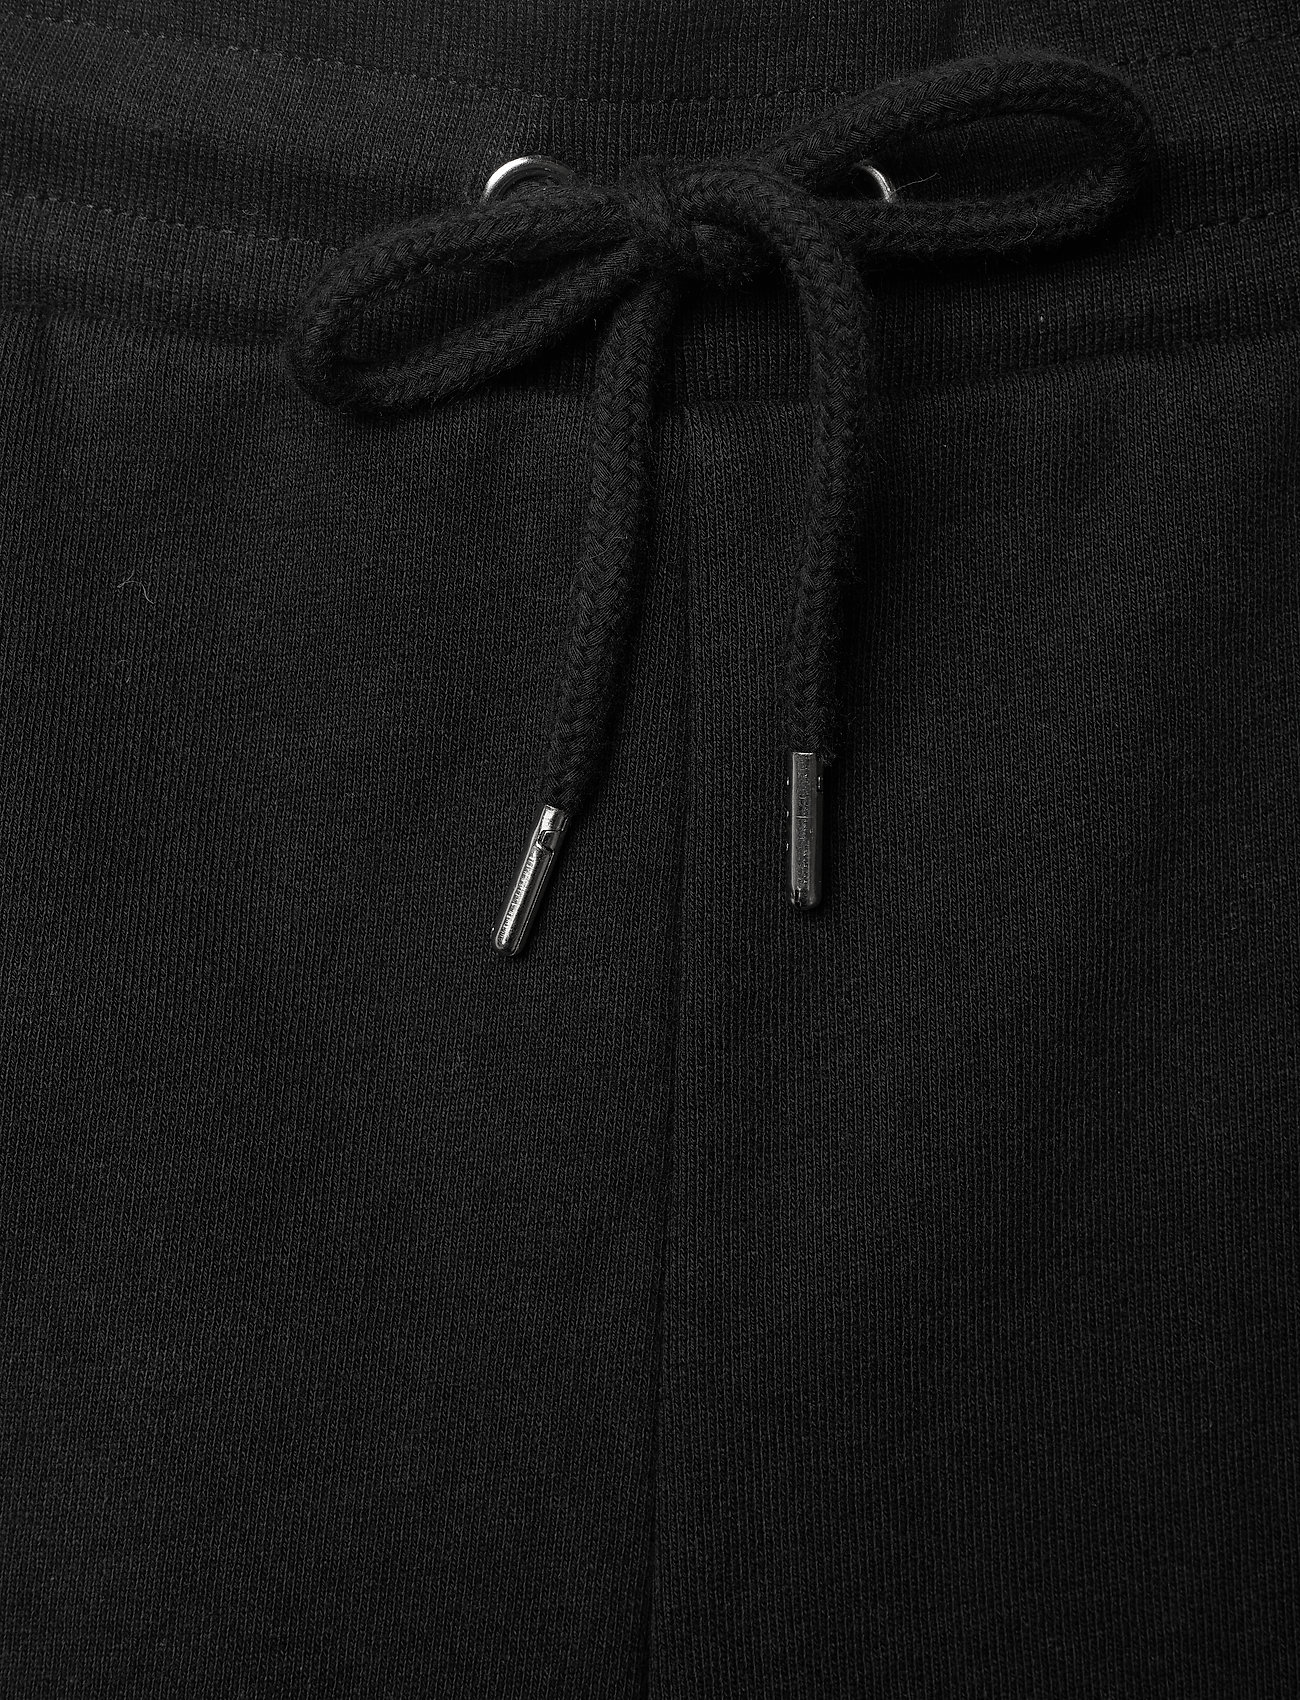 HAN Kjøbenhavn - Sweat shorts - basic-hemden - black logo - 3